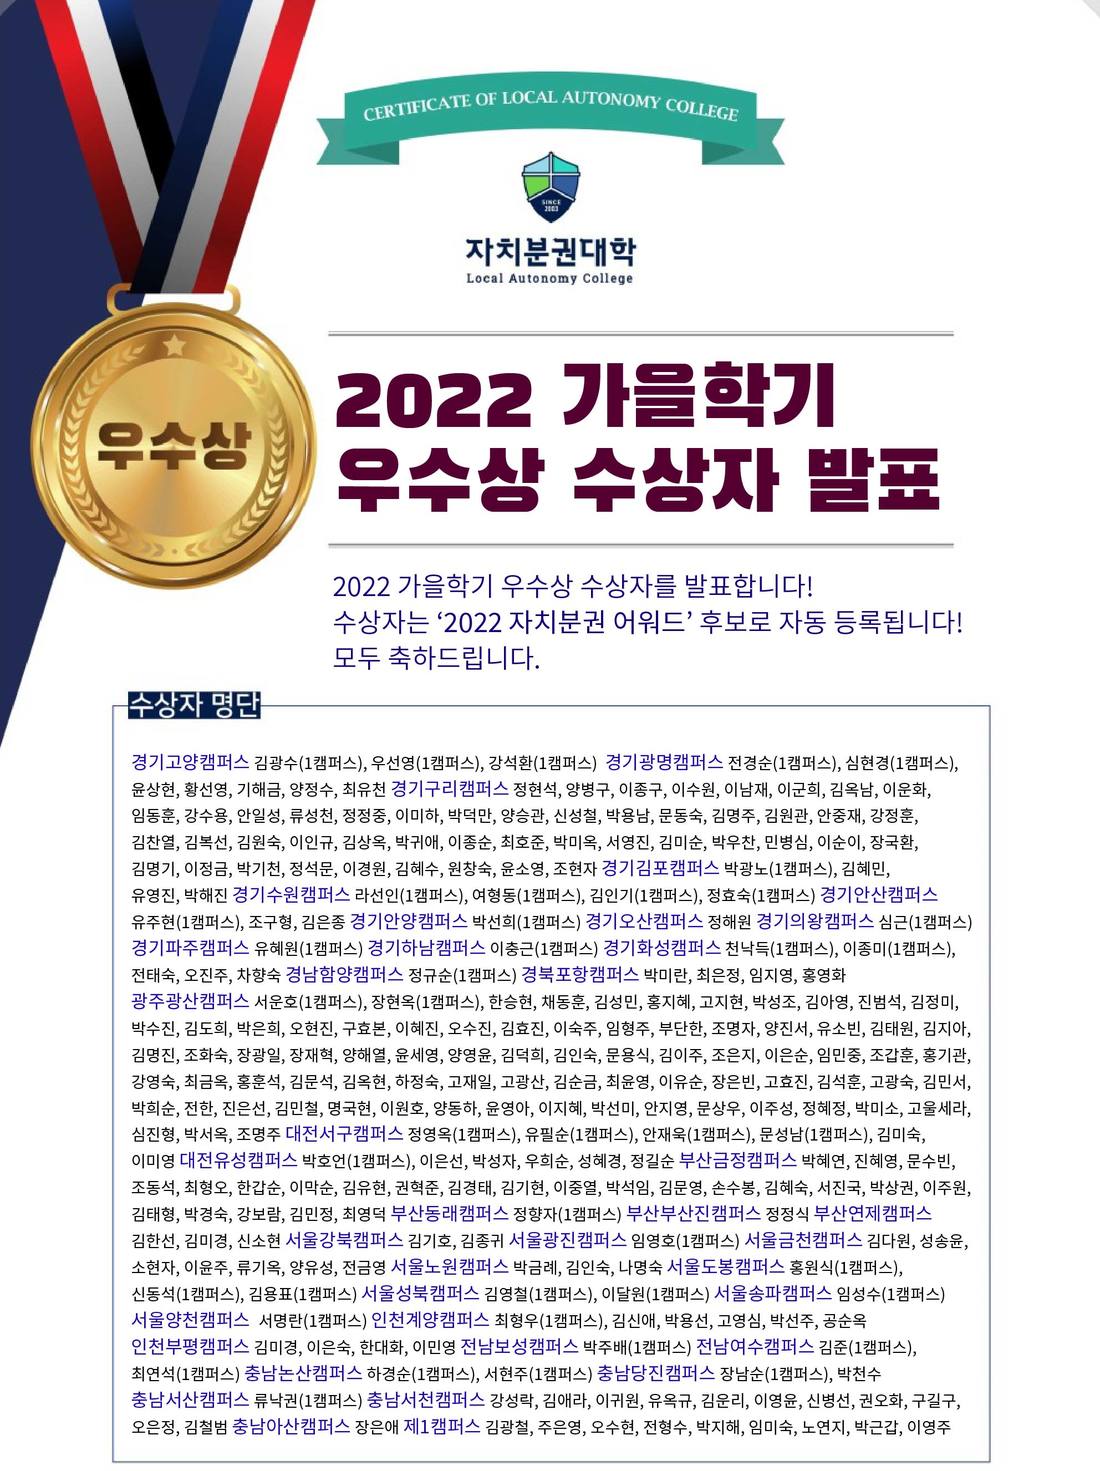 01-2022 가을학기 우수상 수상자 명단-01.jpg